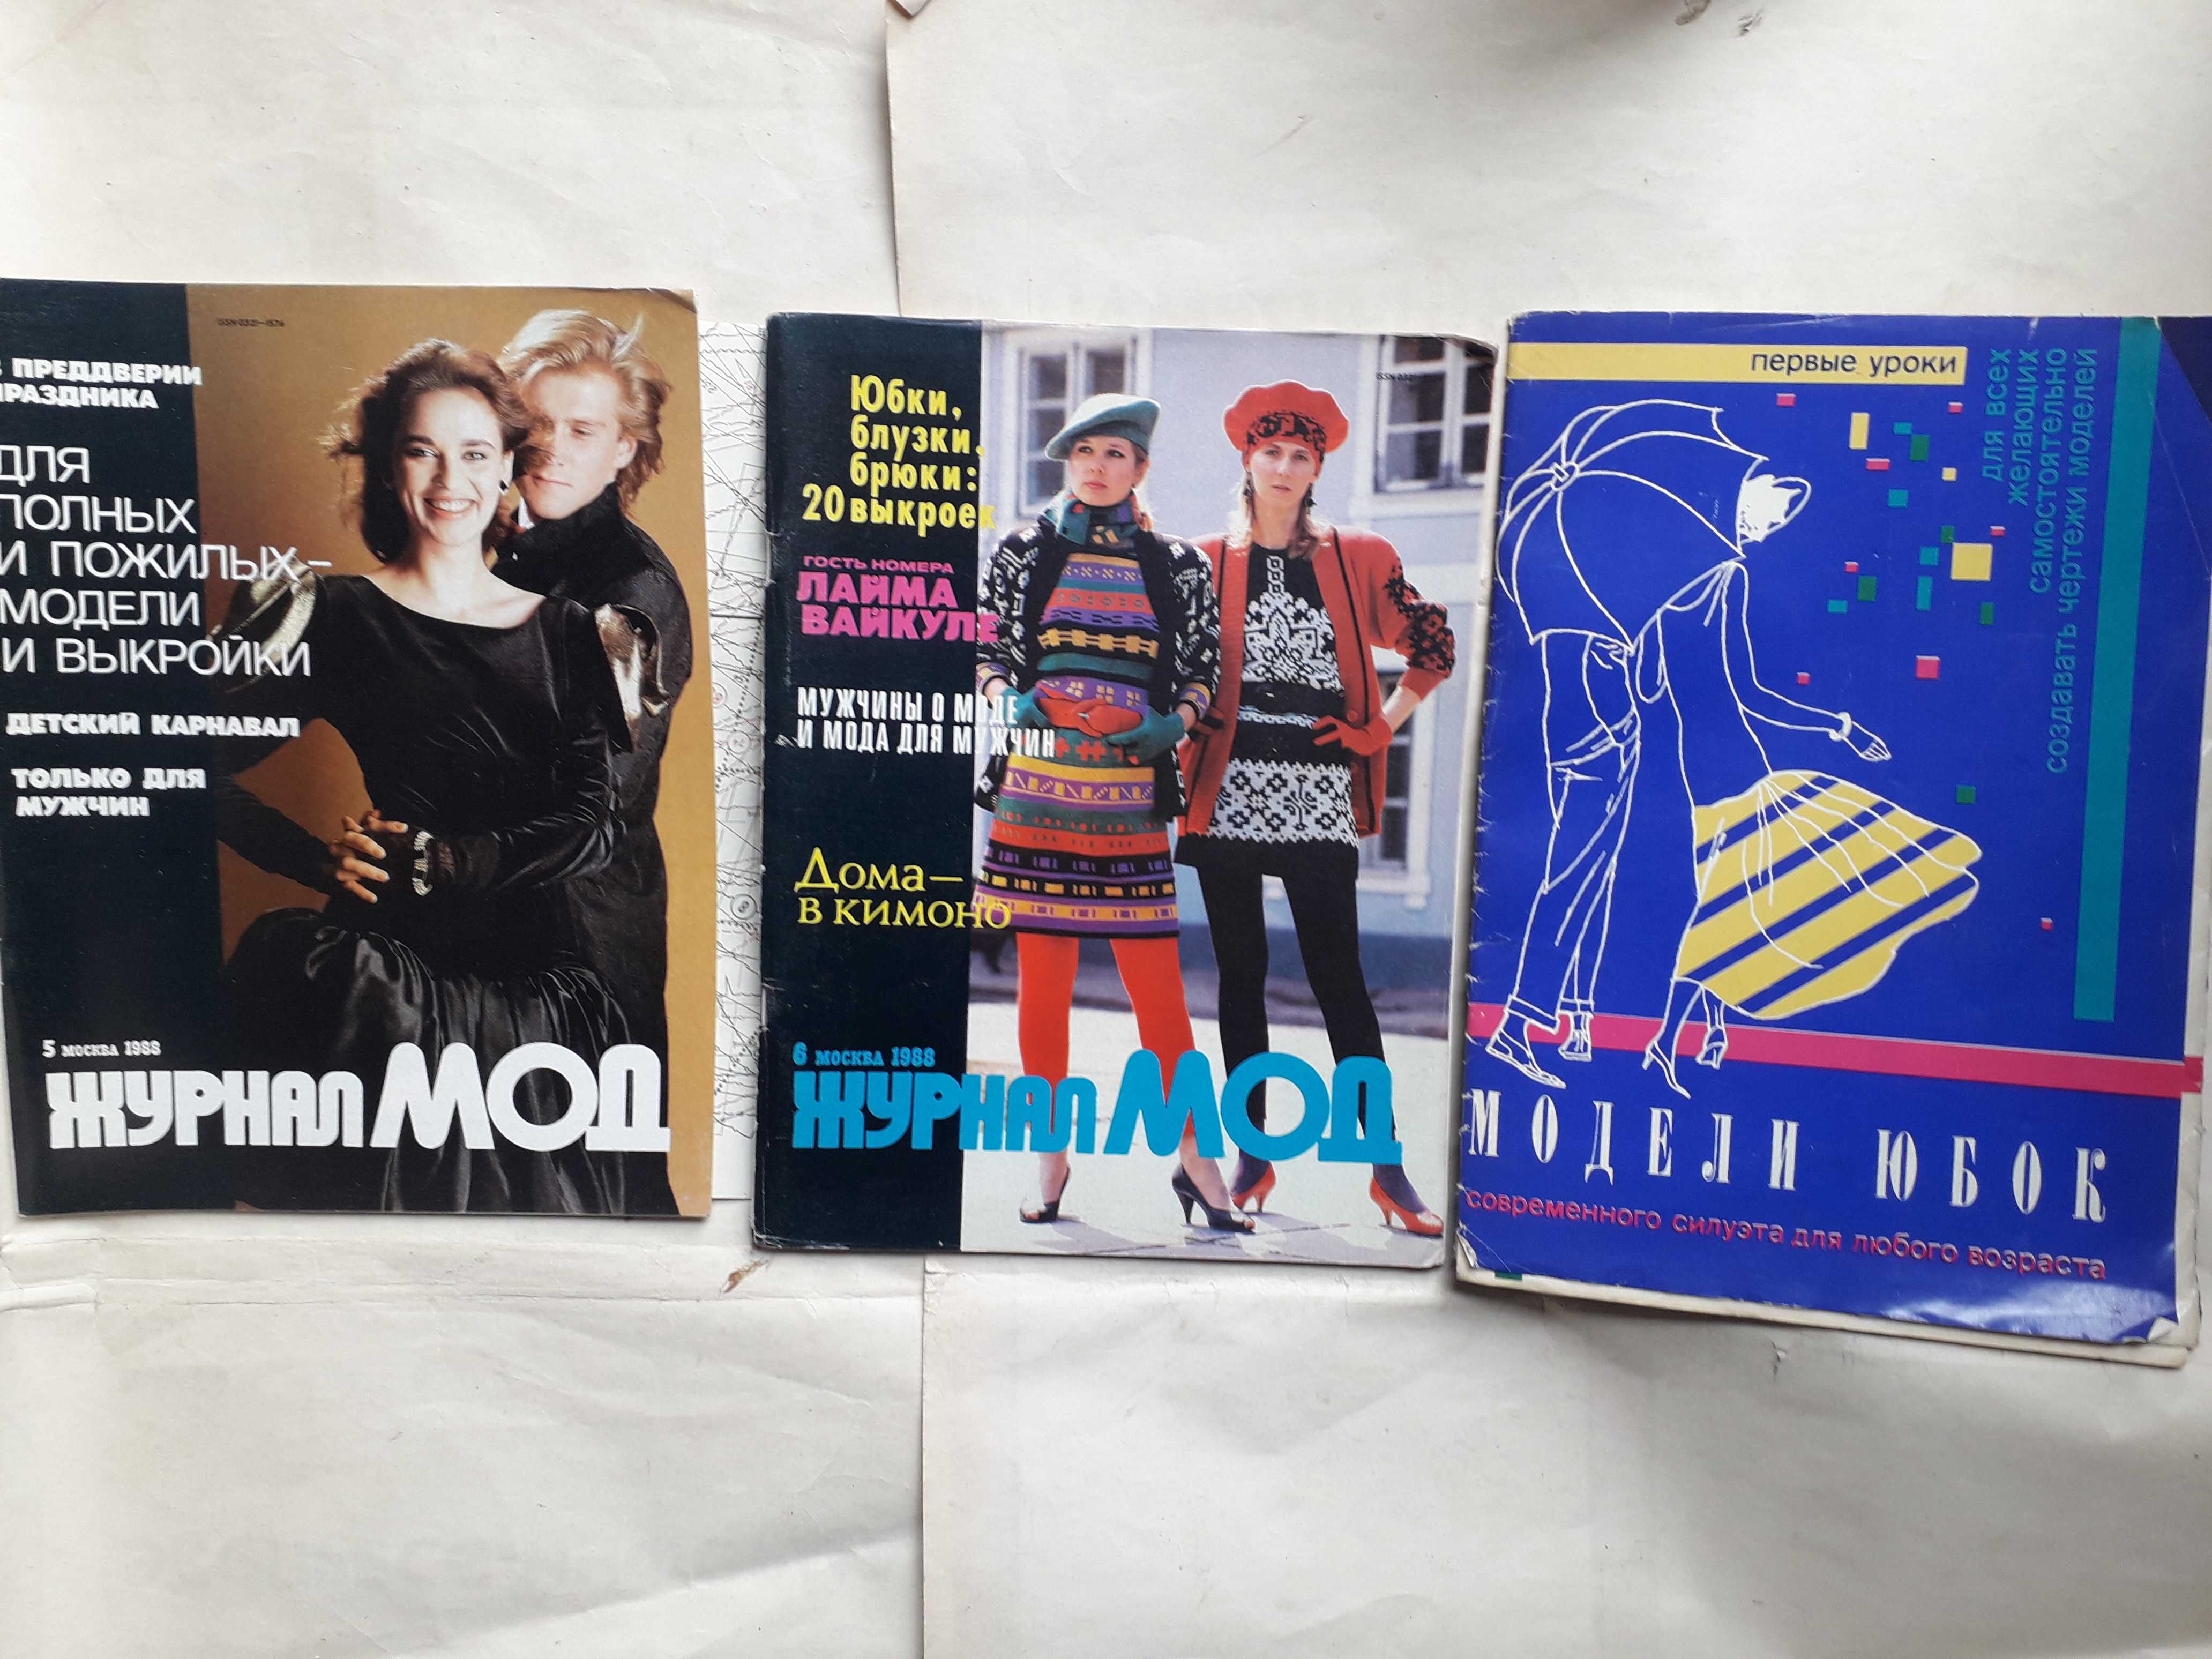 Журнал мод 1-6 за 1988г .Модели юбок.Жіночі плаття.Курсы кройки